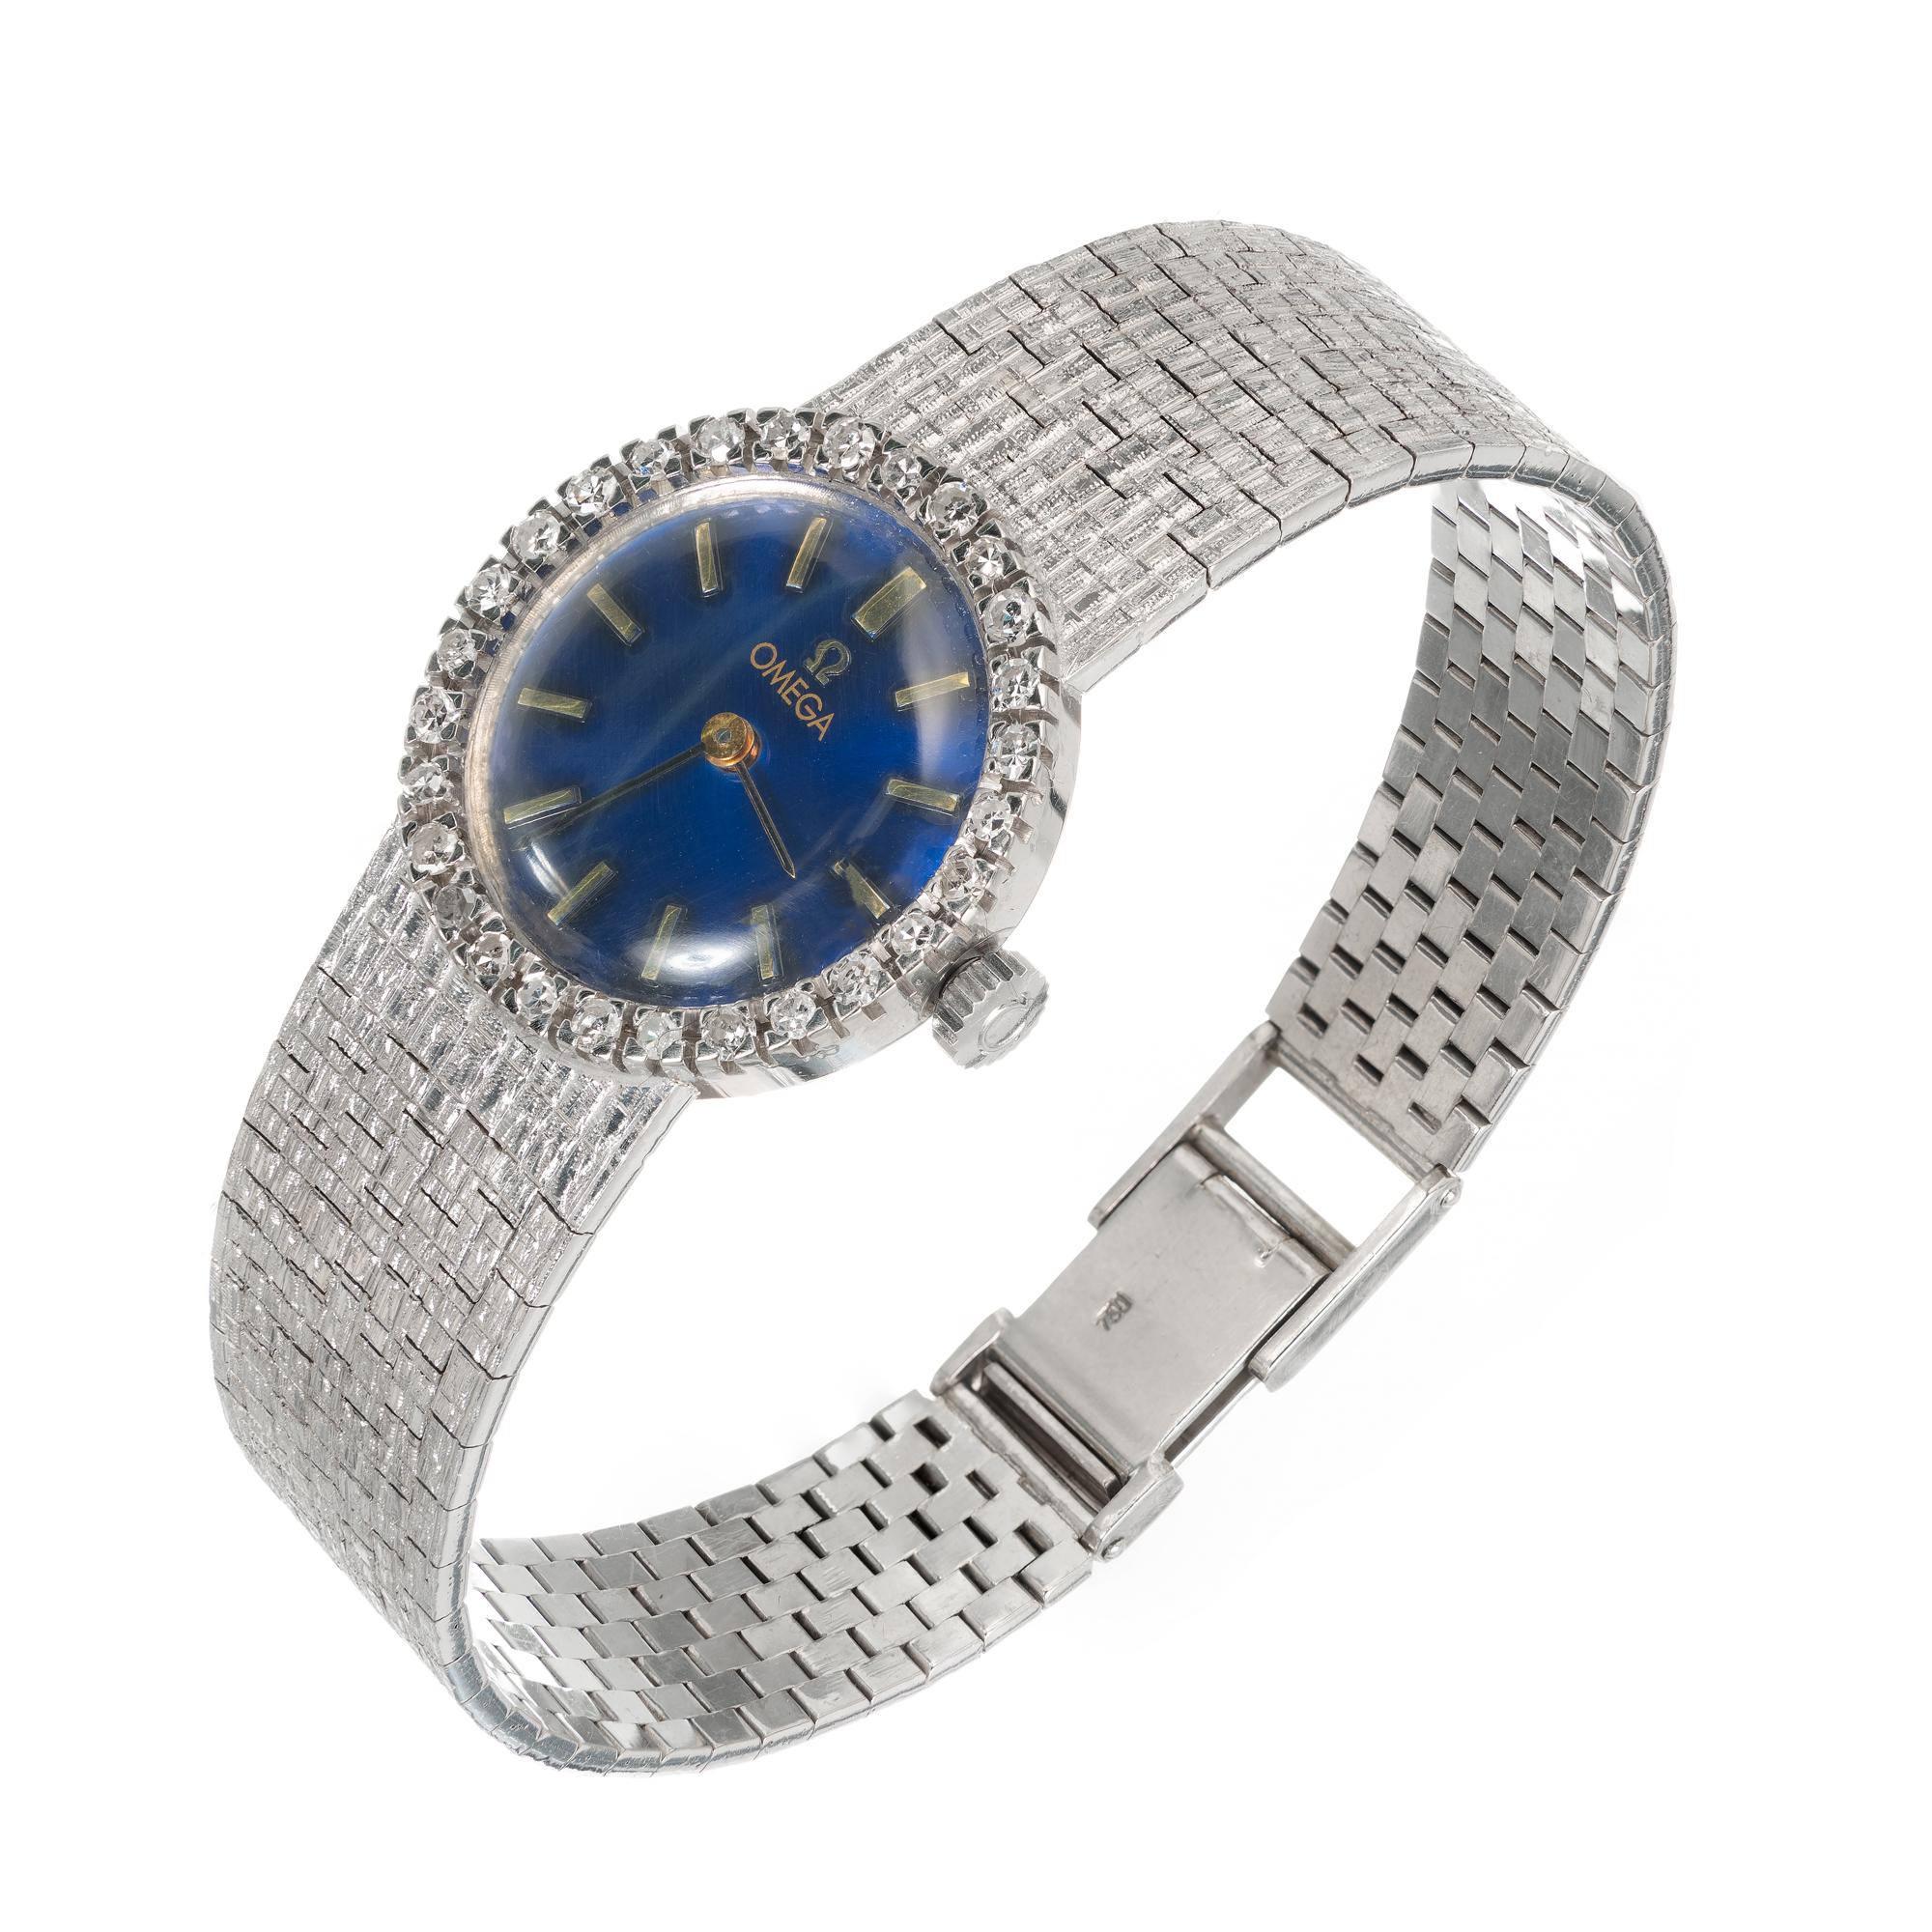 Montre-bracelet Omega pour femmes des années 1960 en or blanc 18 carats avec lunette en diamant et bracelet en maille texturée. Cadran Omega bleu royal remis à neuf. mouvement Omega 17 rubis à remontage manuel 620 

28 diamants taille unique de 1,2